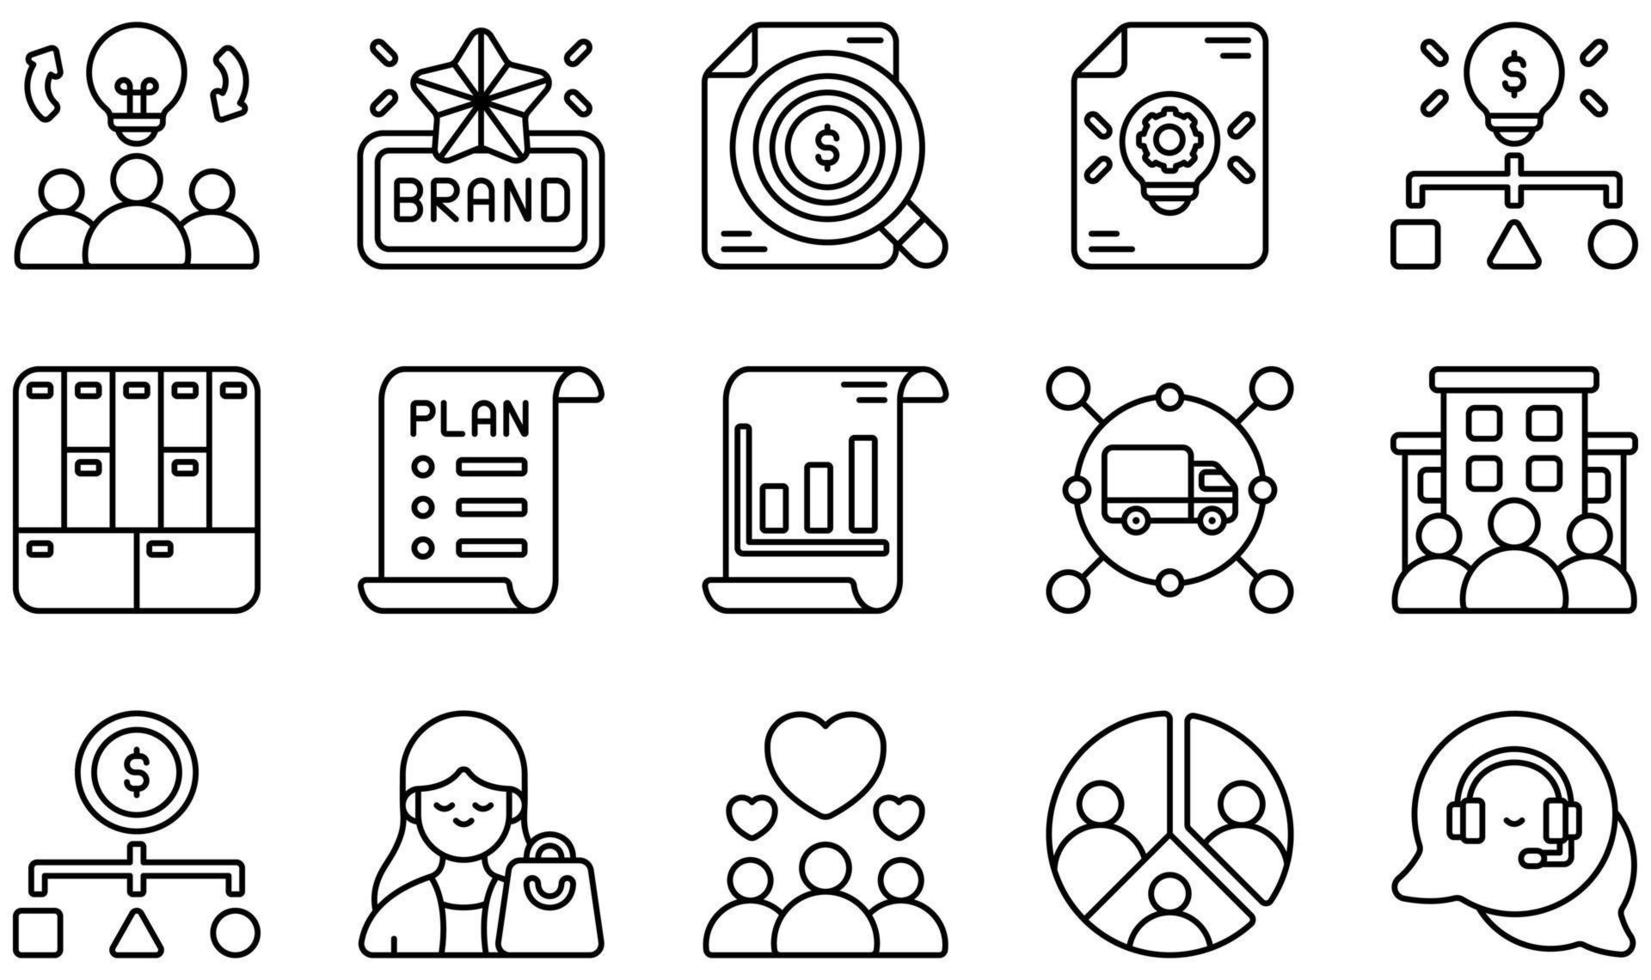 uppsättning vektor ikoner relaterade till affärsmodell. innehåller sådana ikoner som varumärke, affärsanalys, affärsidé, affärsplan, kund, kundsegment med mera.